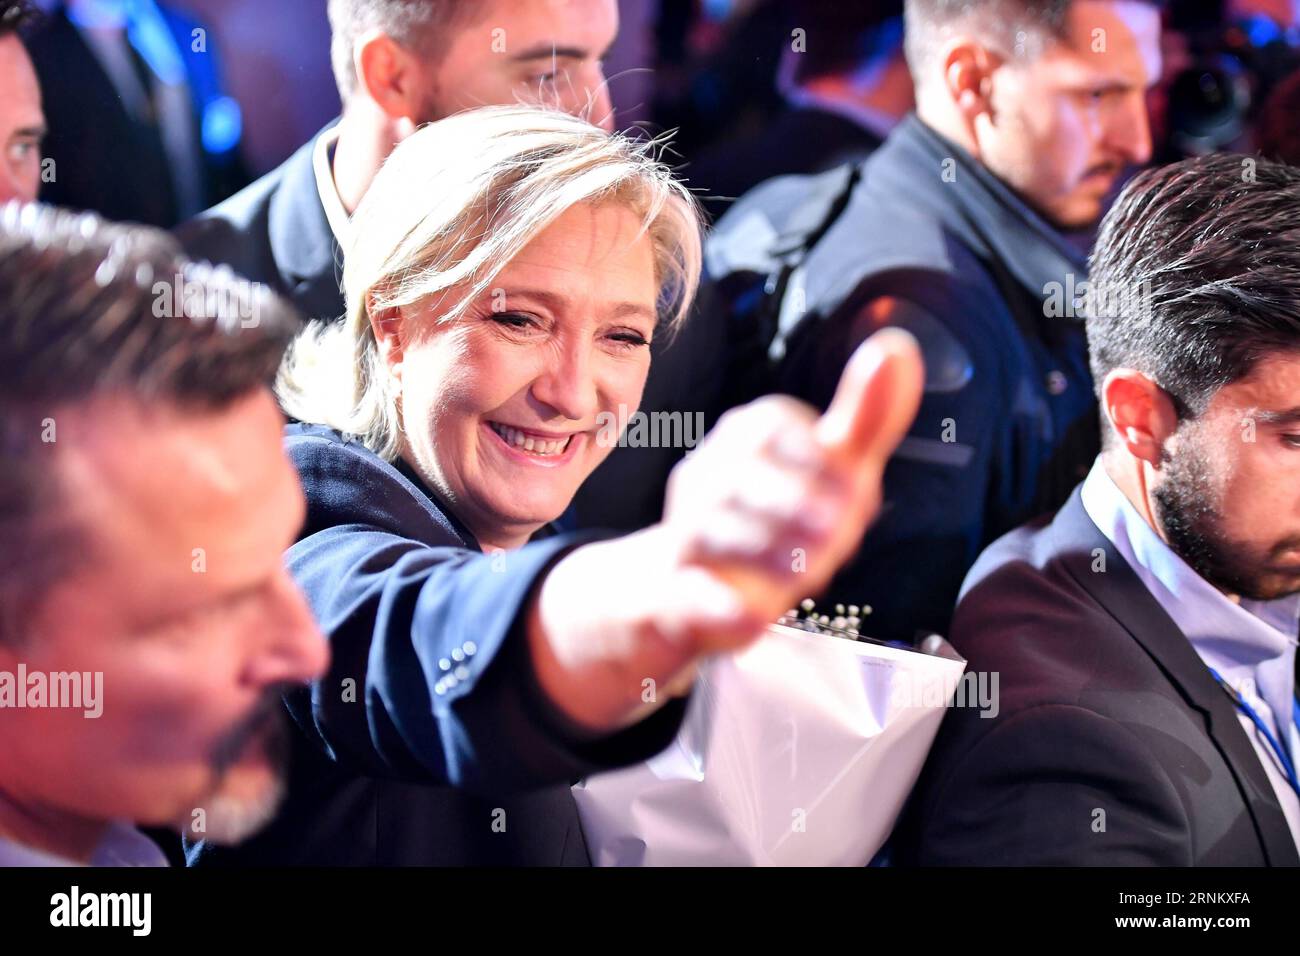 (170423) -- HENIN-BEAUMONT (FRANKREICH), 23. April 2017 -- Marine Le Pen (C), eine rechtsextreme Präsidentschaftskandidatin der National Front (FN), begrüßt ihre Anhänger bei einer Kundgebung nach der ersten Runde der französischen Präsidentschaftswahl in Henin-Beaumont (Frankreich) am 23. April 2017. Der zentristische Kandidat und ehemalige Wirtschaftsminister Emmanuel Macron und die rechtsextreme Kandidatin Marine Le Pen am Sonntag kamen in der ersten Runde der französischen Präsidentschaftswahlen an die Spitze, laut Prognosen von Wahlagenturen und offiziellen Teilergebnissen. Die beiden führenden Kandidaten werden am 7. Mai in der Stichwahl gegeneinander antreten. ) Stockfoto